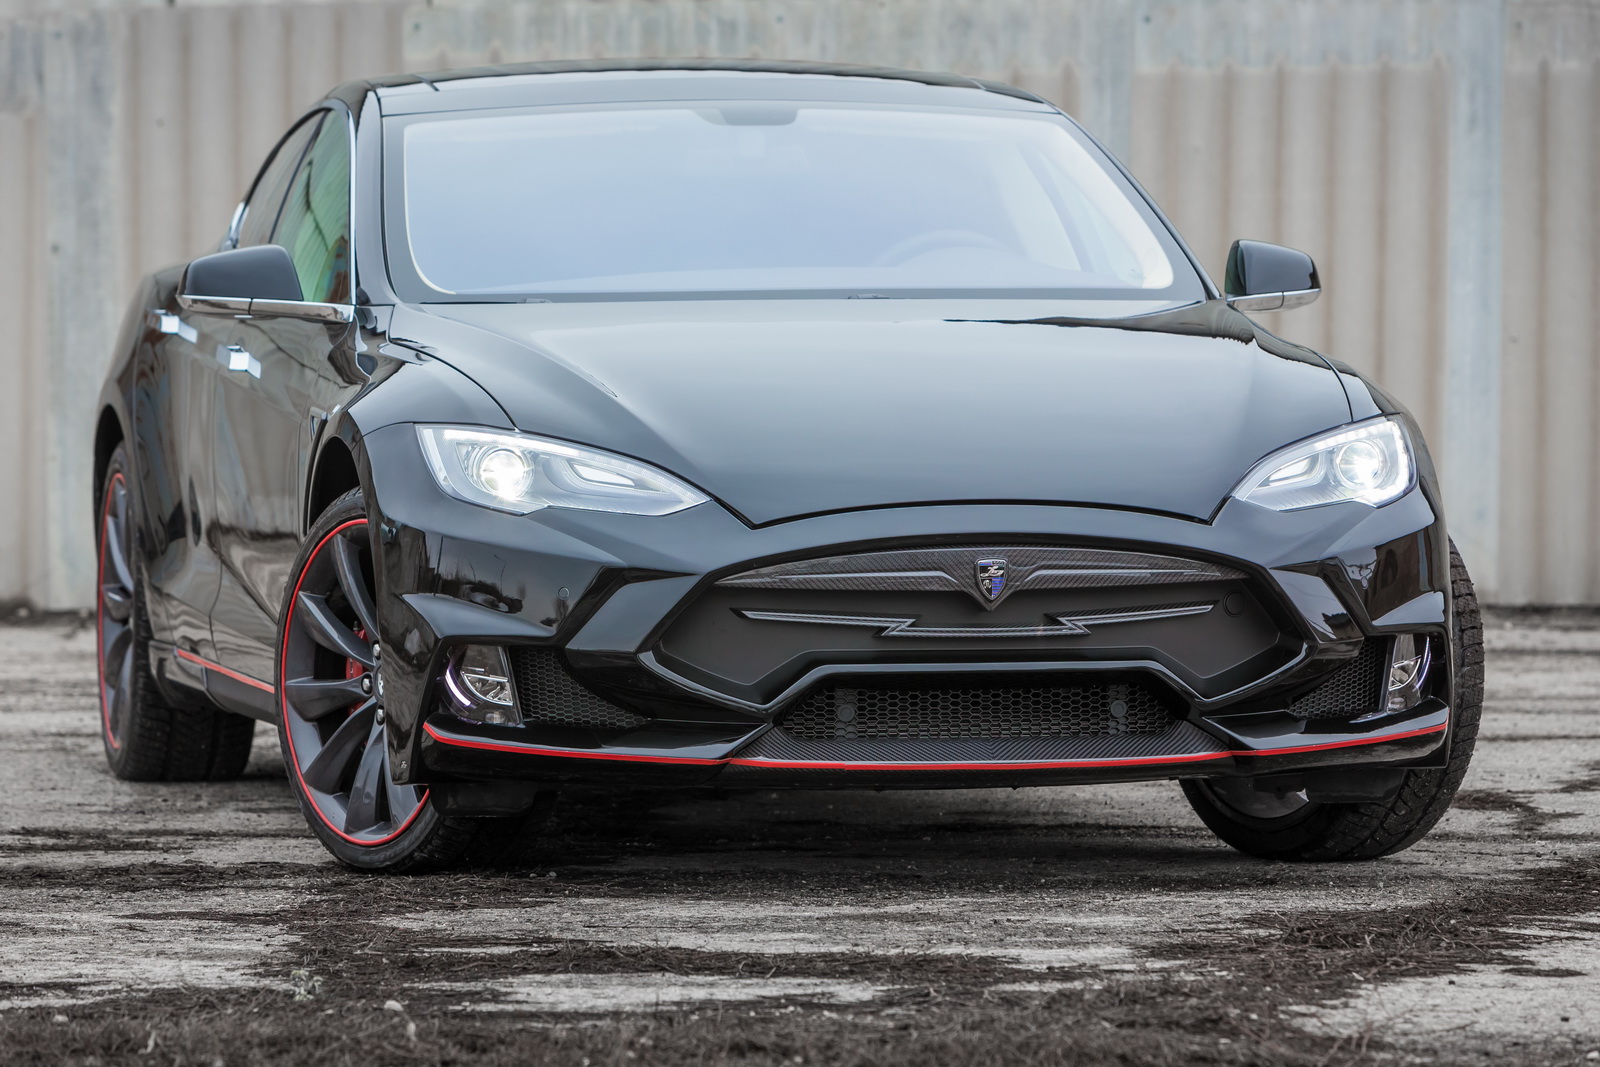 Neues Designprojekt für den Tesla Model S Elizabeta